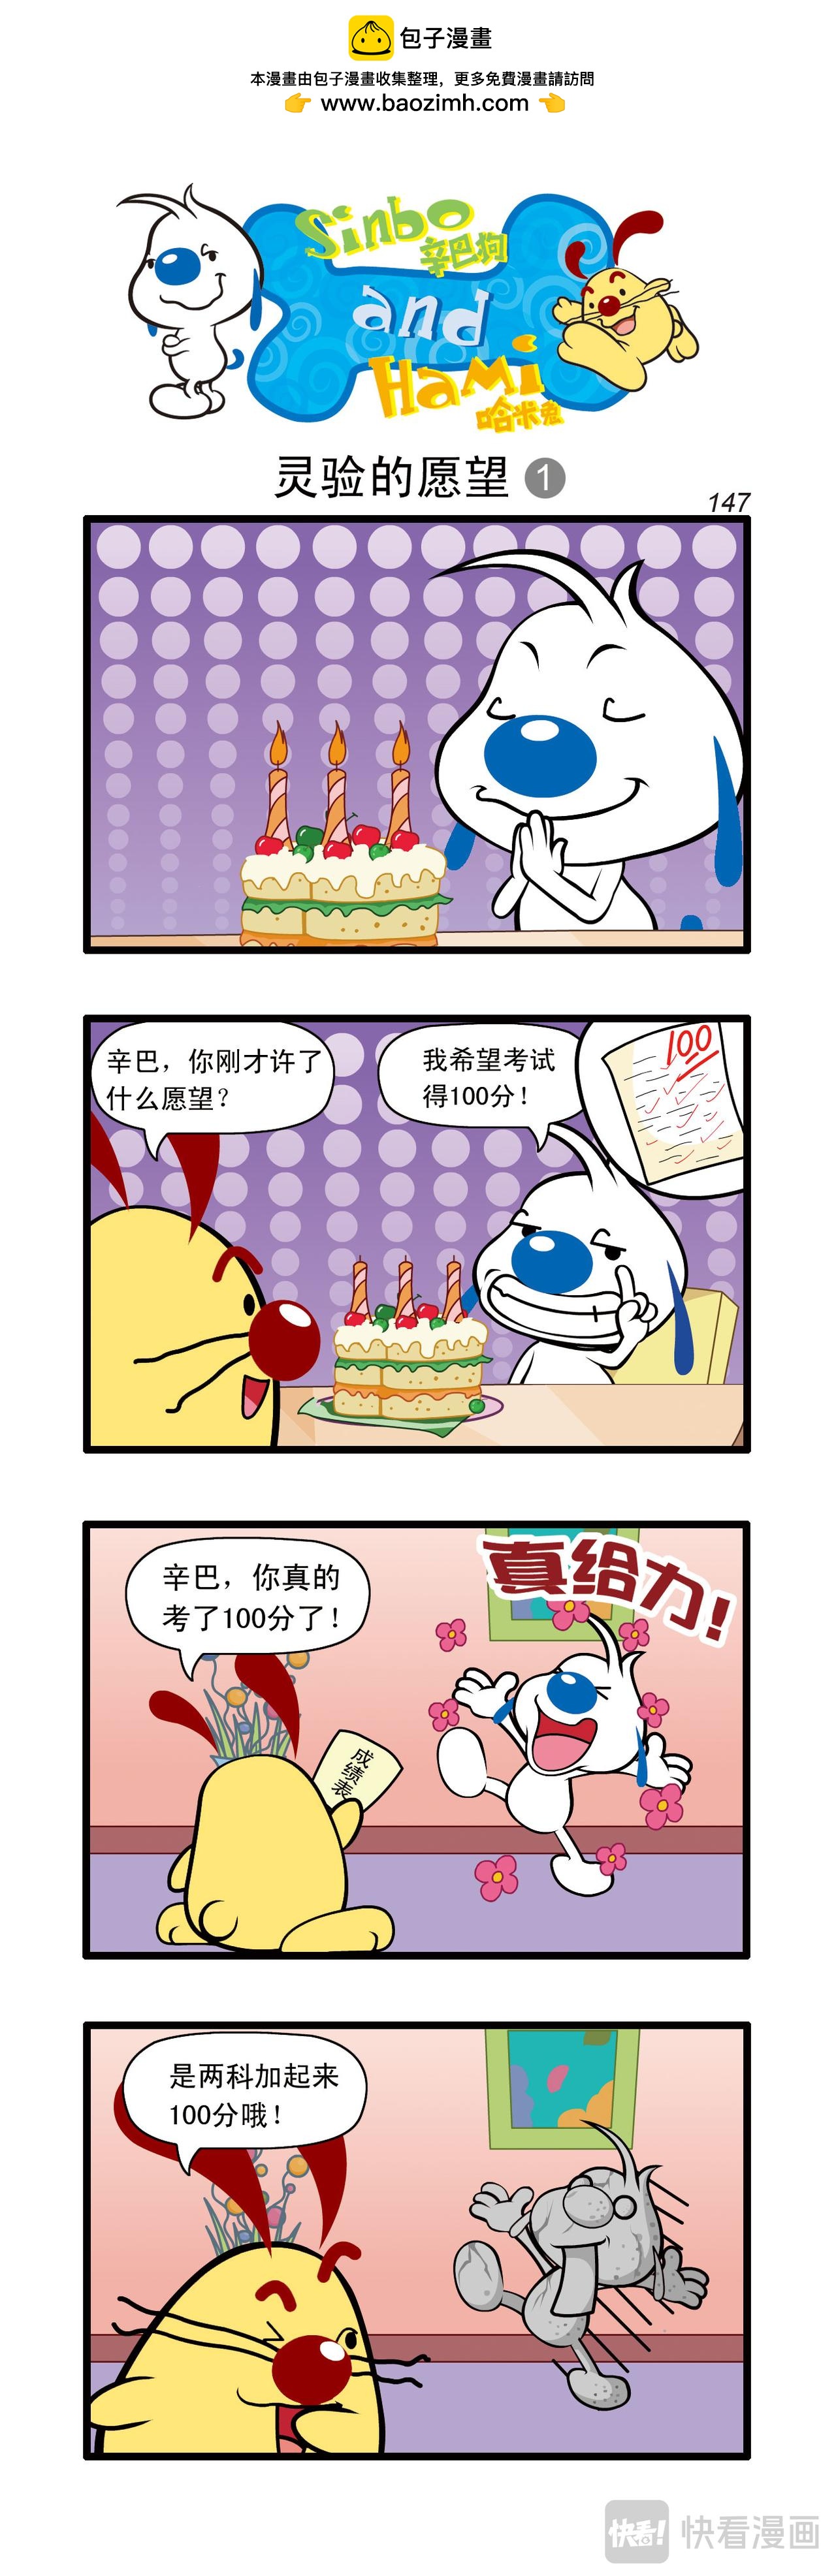 辛巴狗日常漫畫 - 多格43 - 1